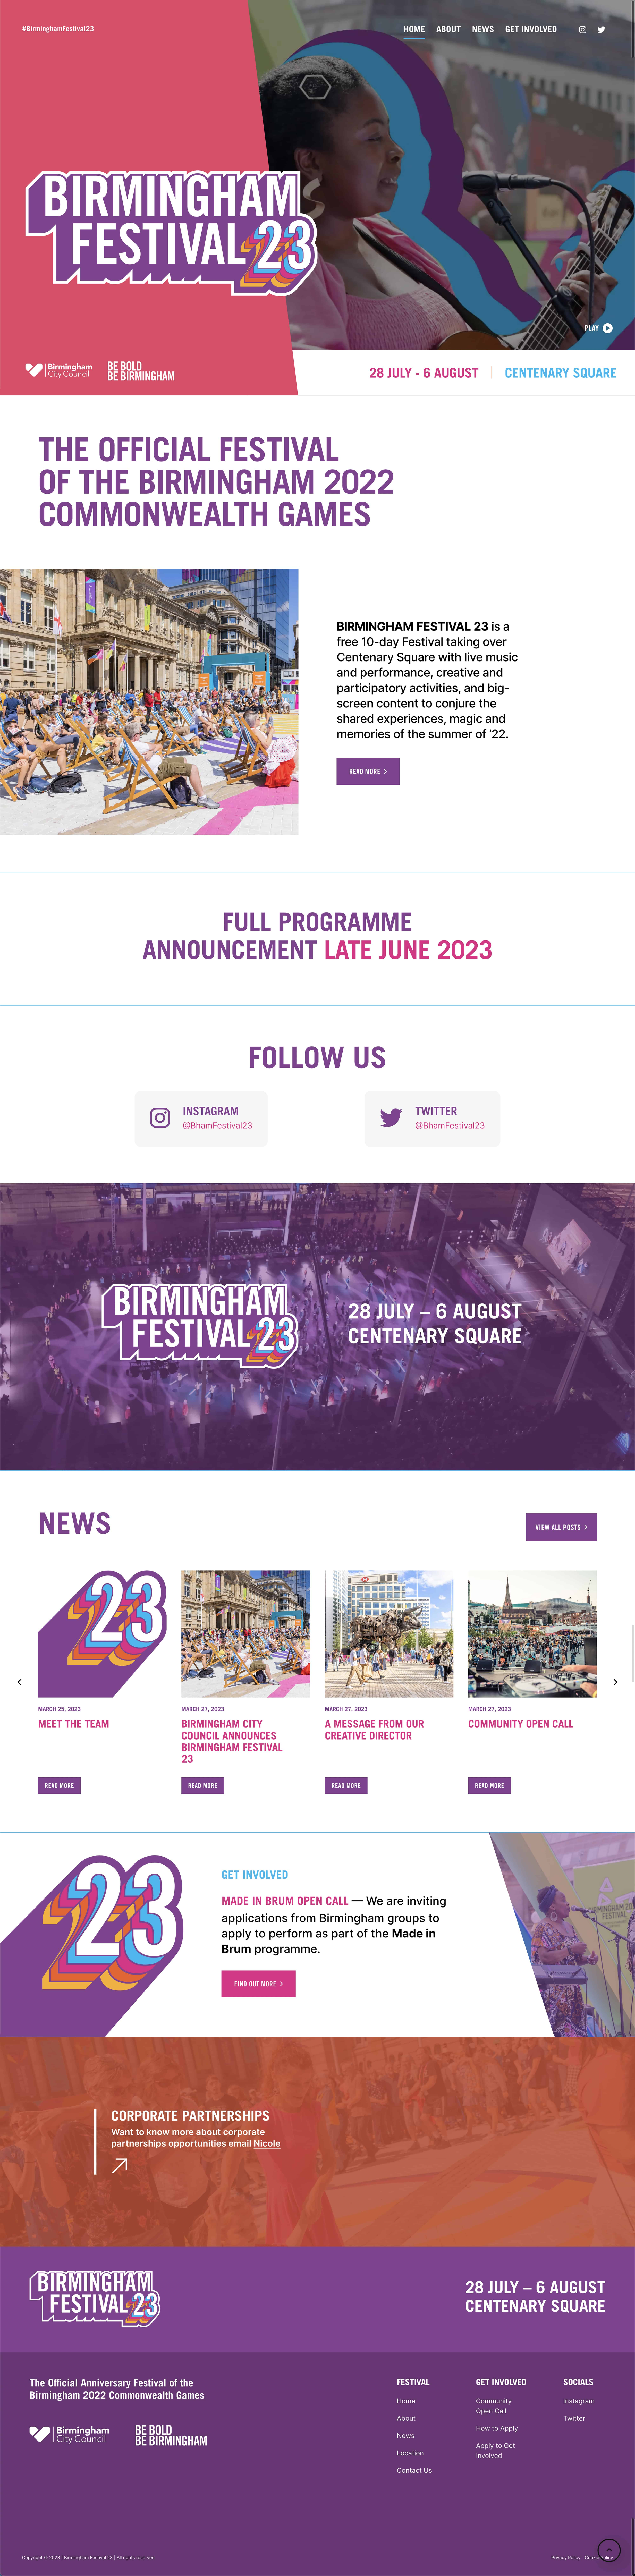 Birmingham Festival 23 Website Design